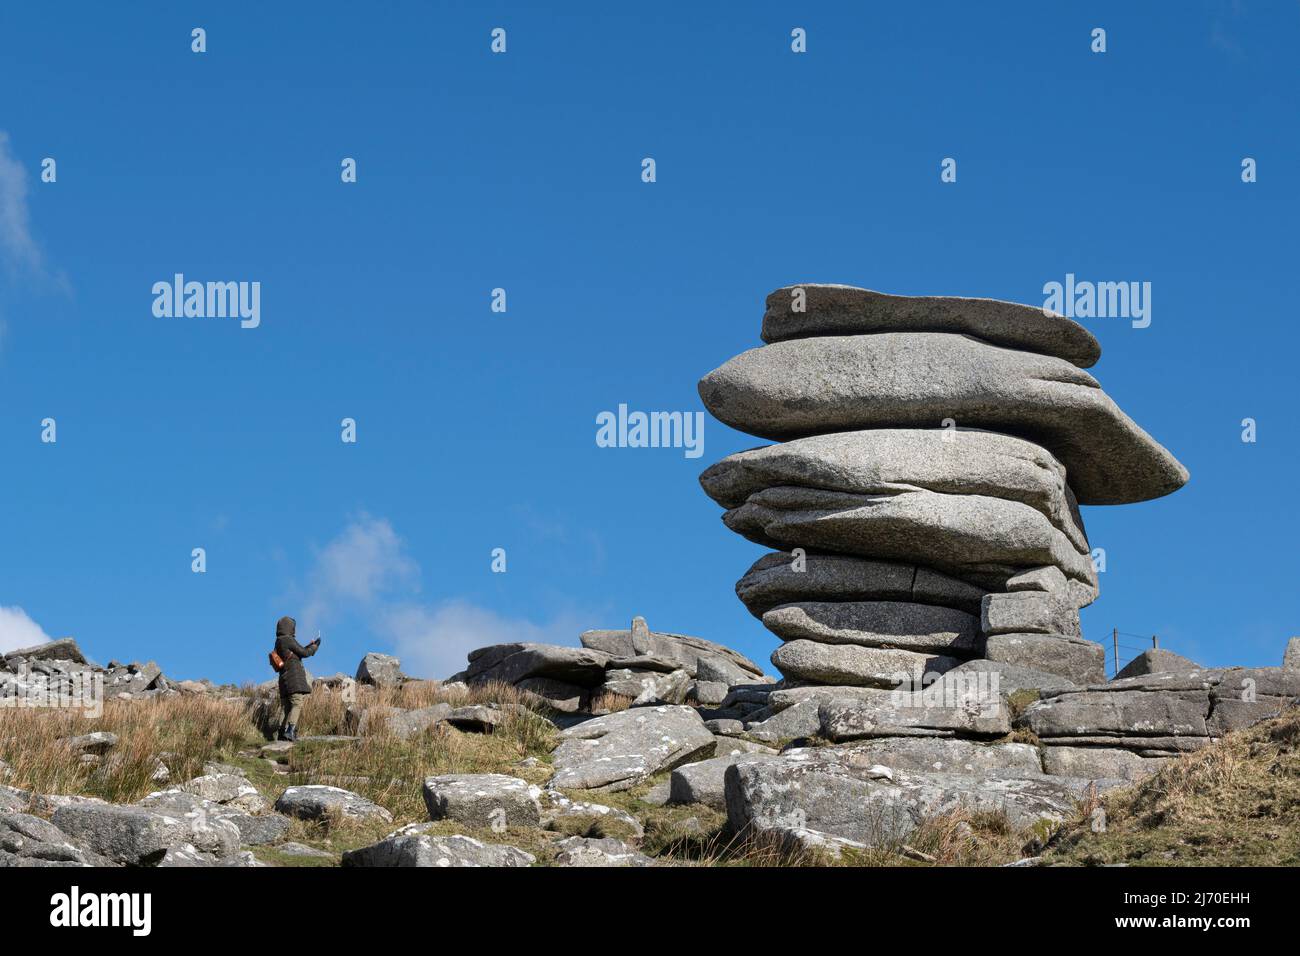 Un marcheur photographiant le Cheesewring une énorme pile de roches de granit formée par l'action glaciaire sur le sommet de Stowe Hill sur Bodmin Moor en Cornouailles. Banque D'Images